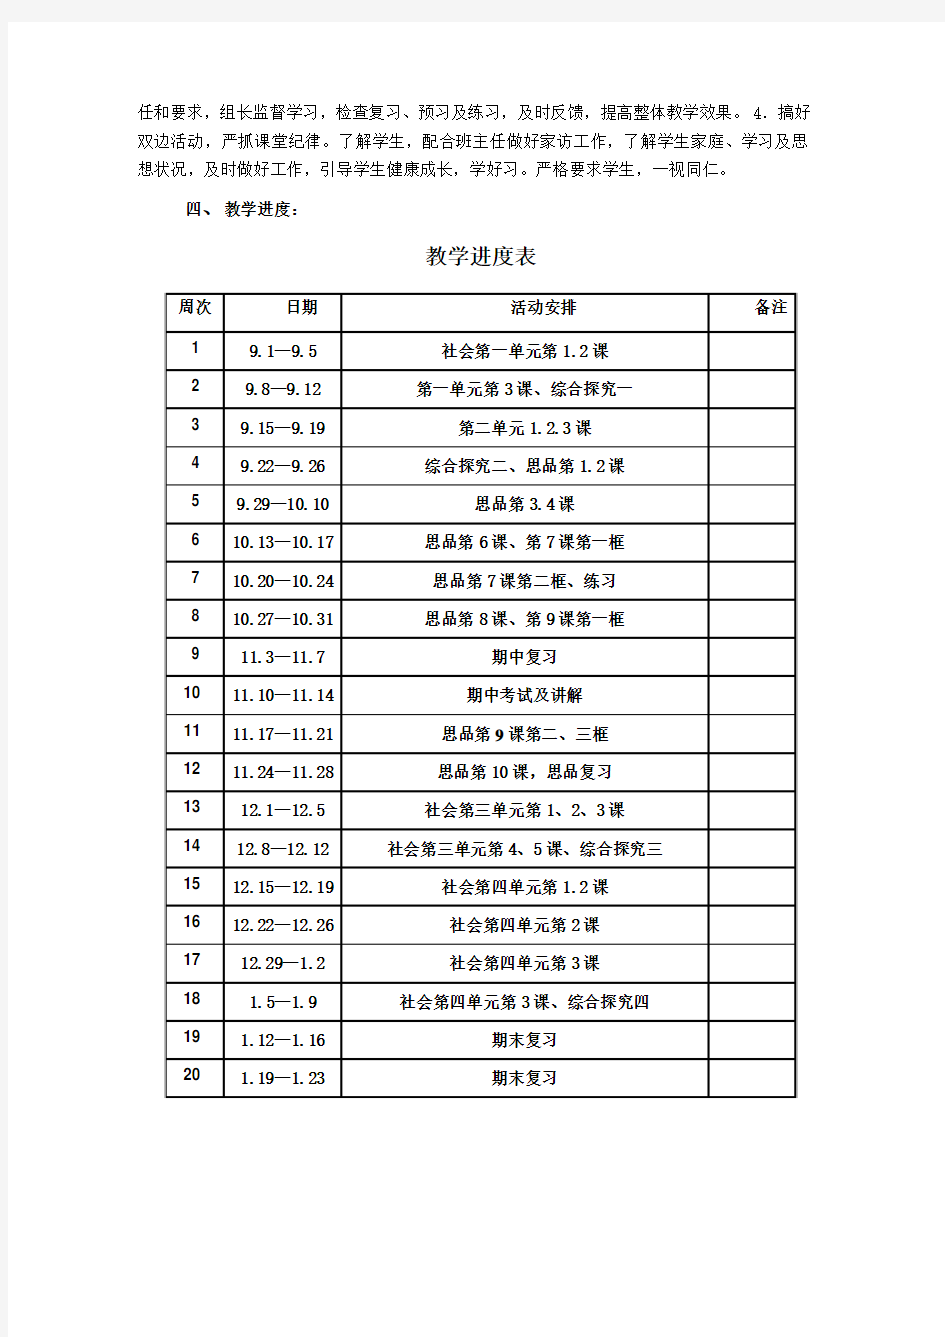 齐贤镇中学2014学年第一学期年级组教学计划(含教学进度表)